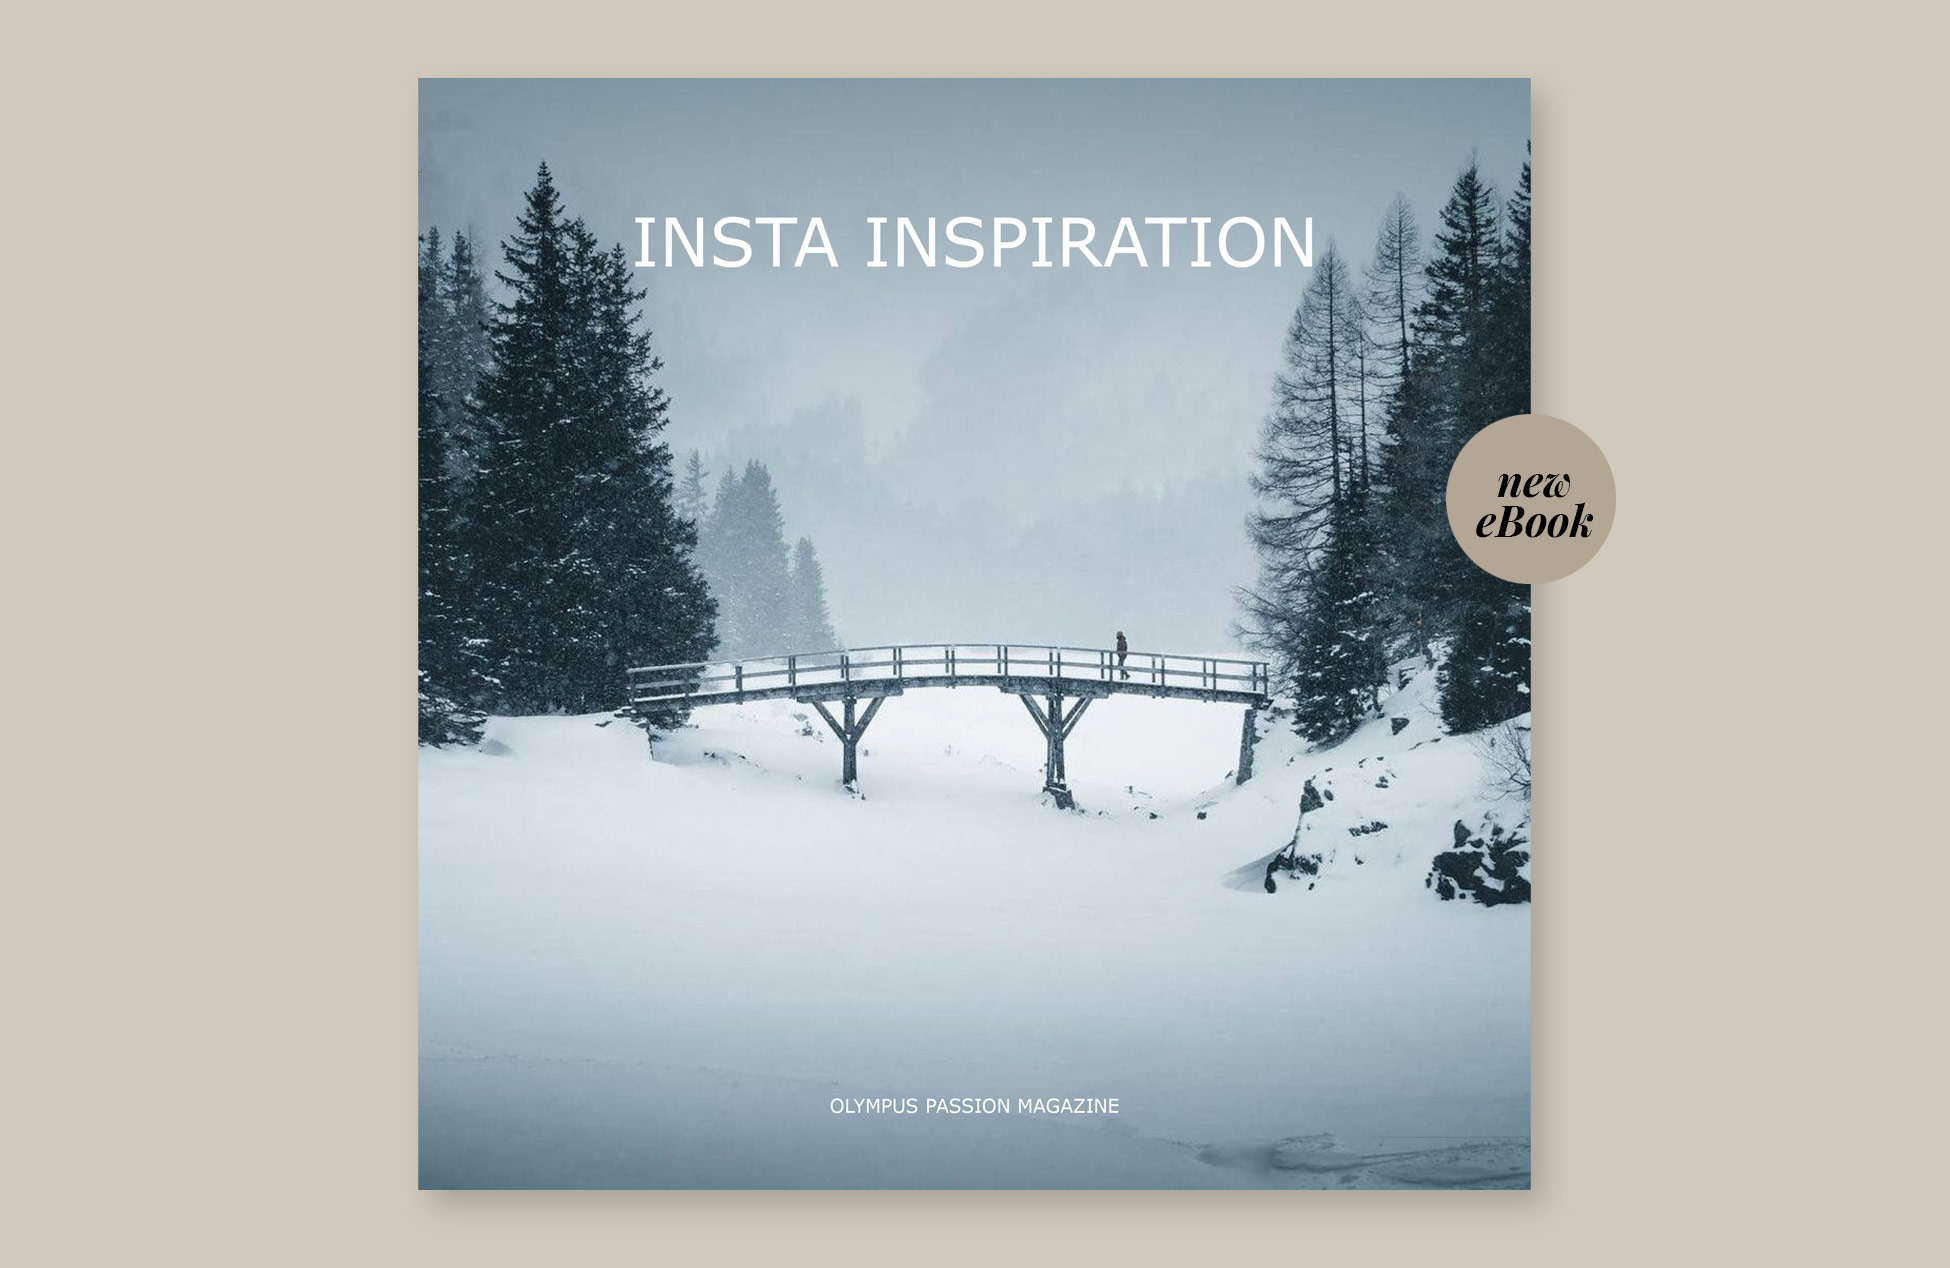 New eBook Insta Inspiration Vol. 1